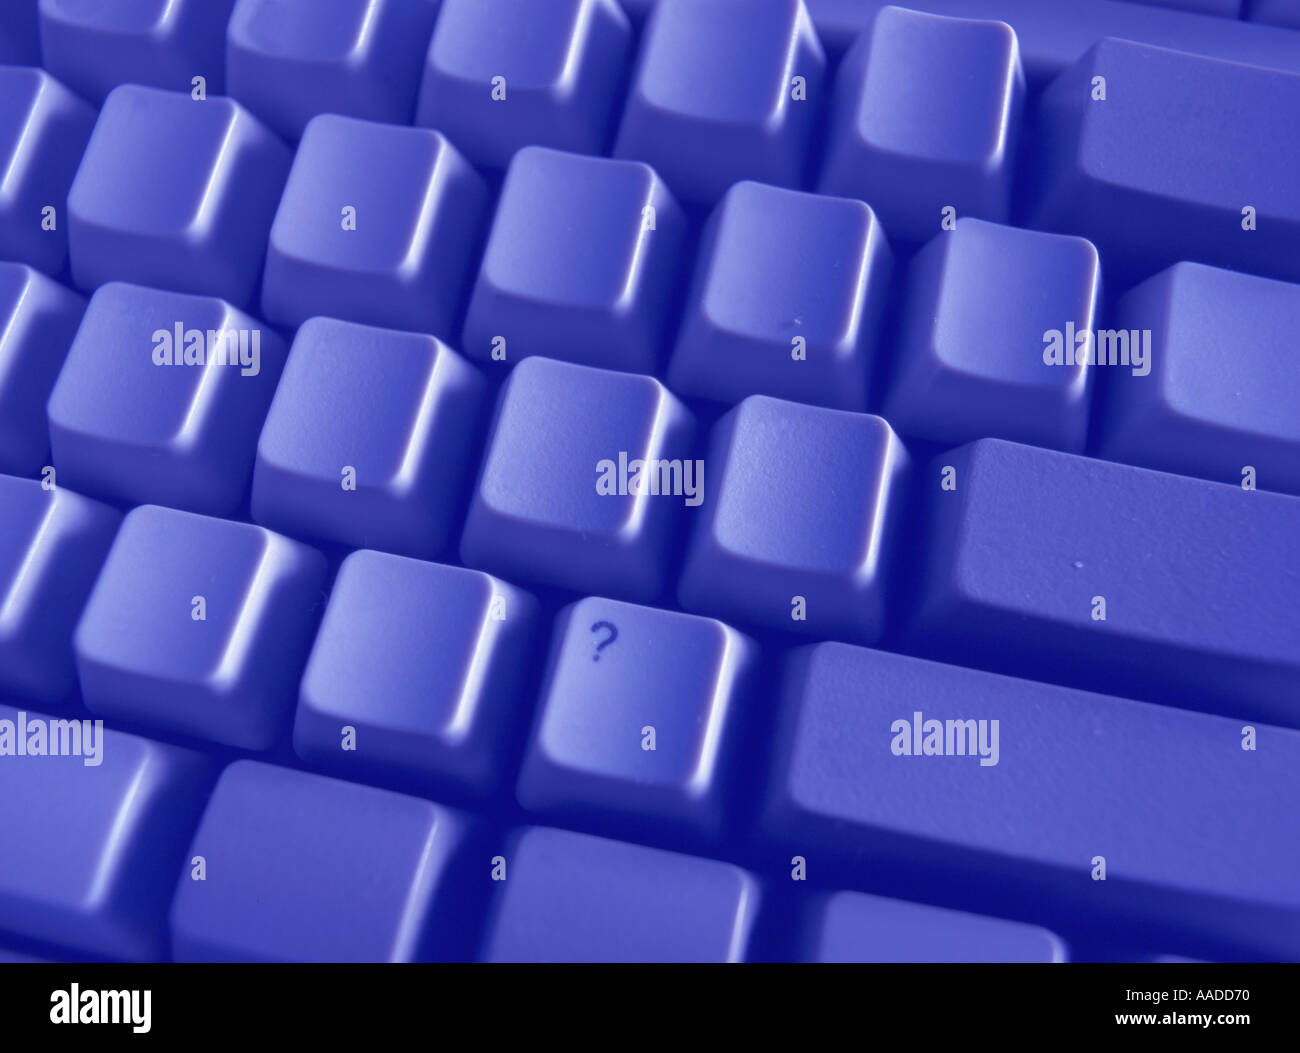 Fragezeichen auf einfache Tastatur Stockfoto